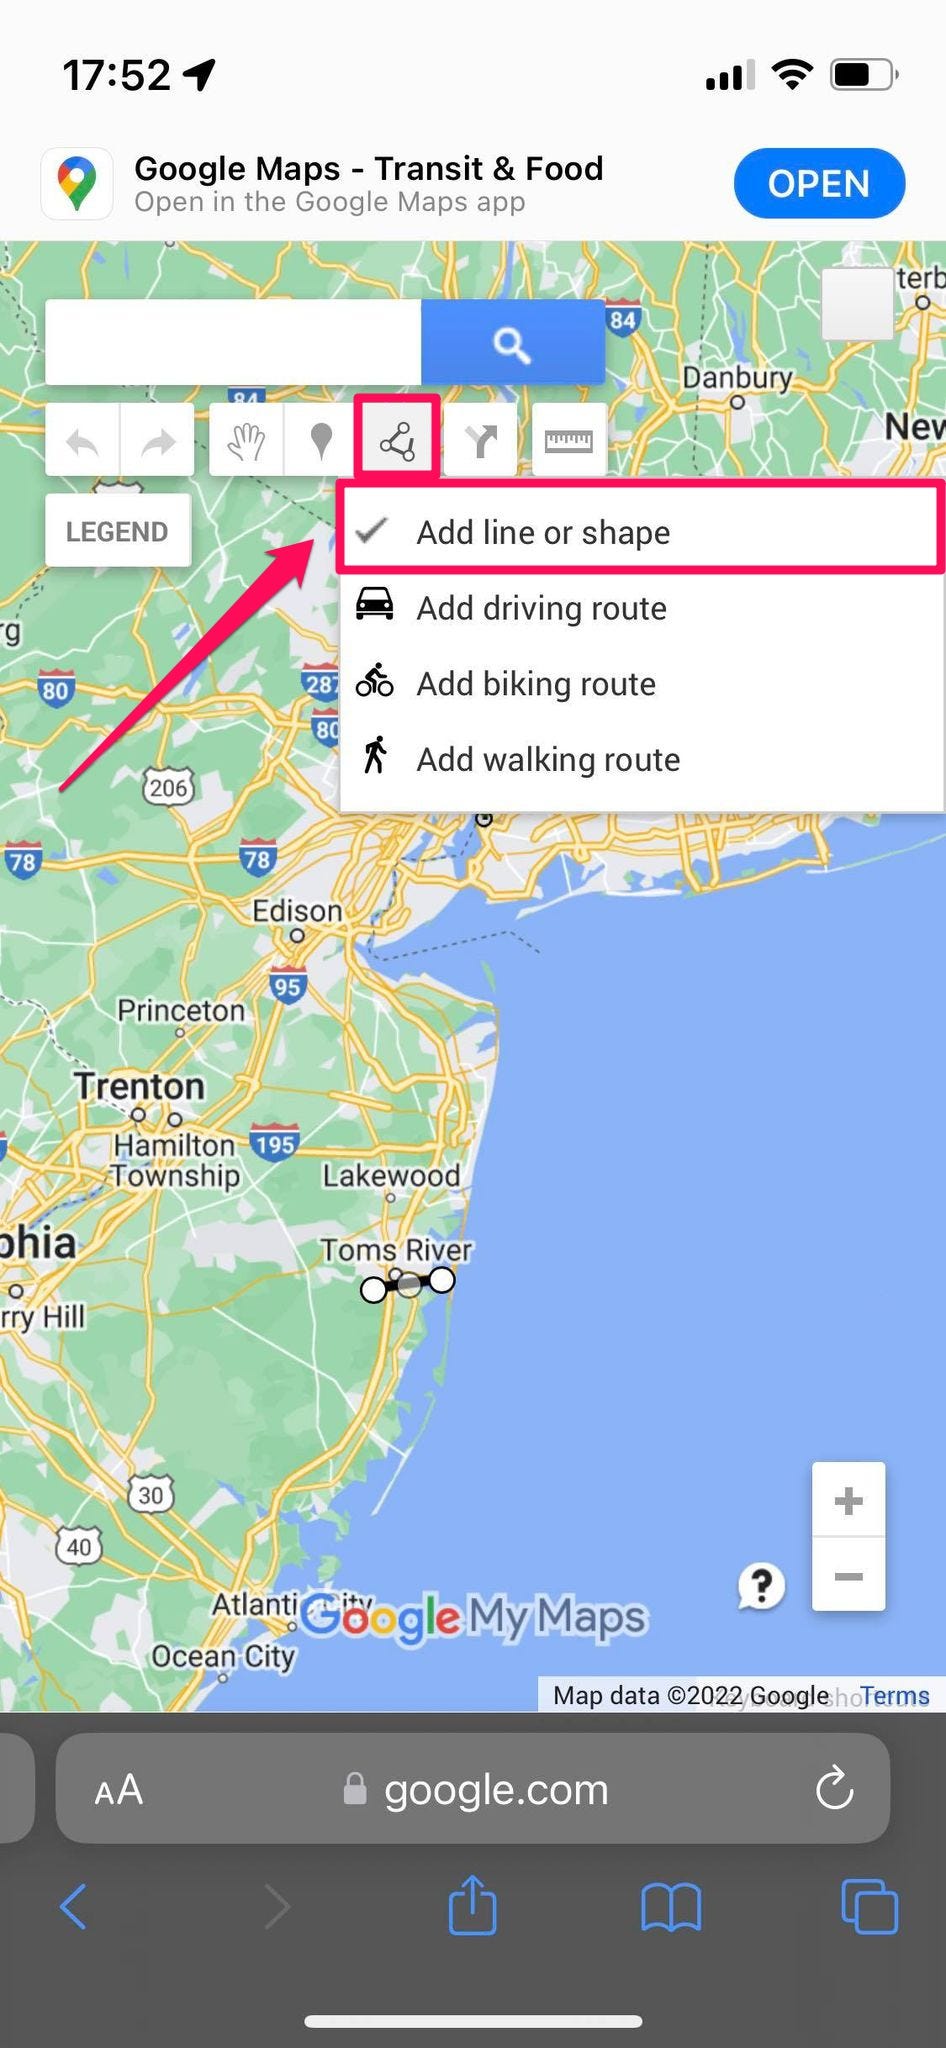 Visualizzazione mobile della pagina della mappa personalizzata su Google Maps su dispositivo mobile, con il pulsante "Traccia una linea" e l'opzione "Aggiungi linea o forma" evidenziate in un riquadro rosa acceso con una freccia puntata su di esso.